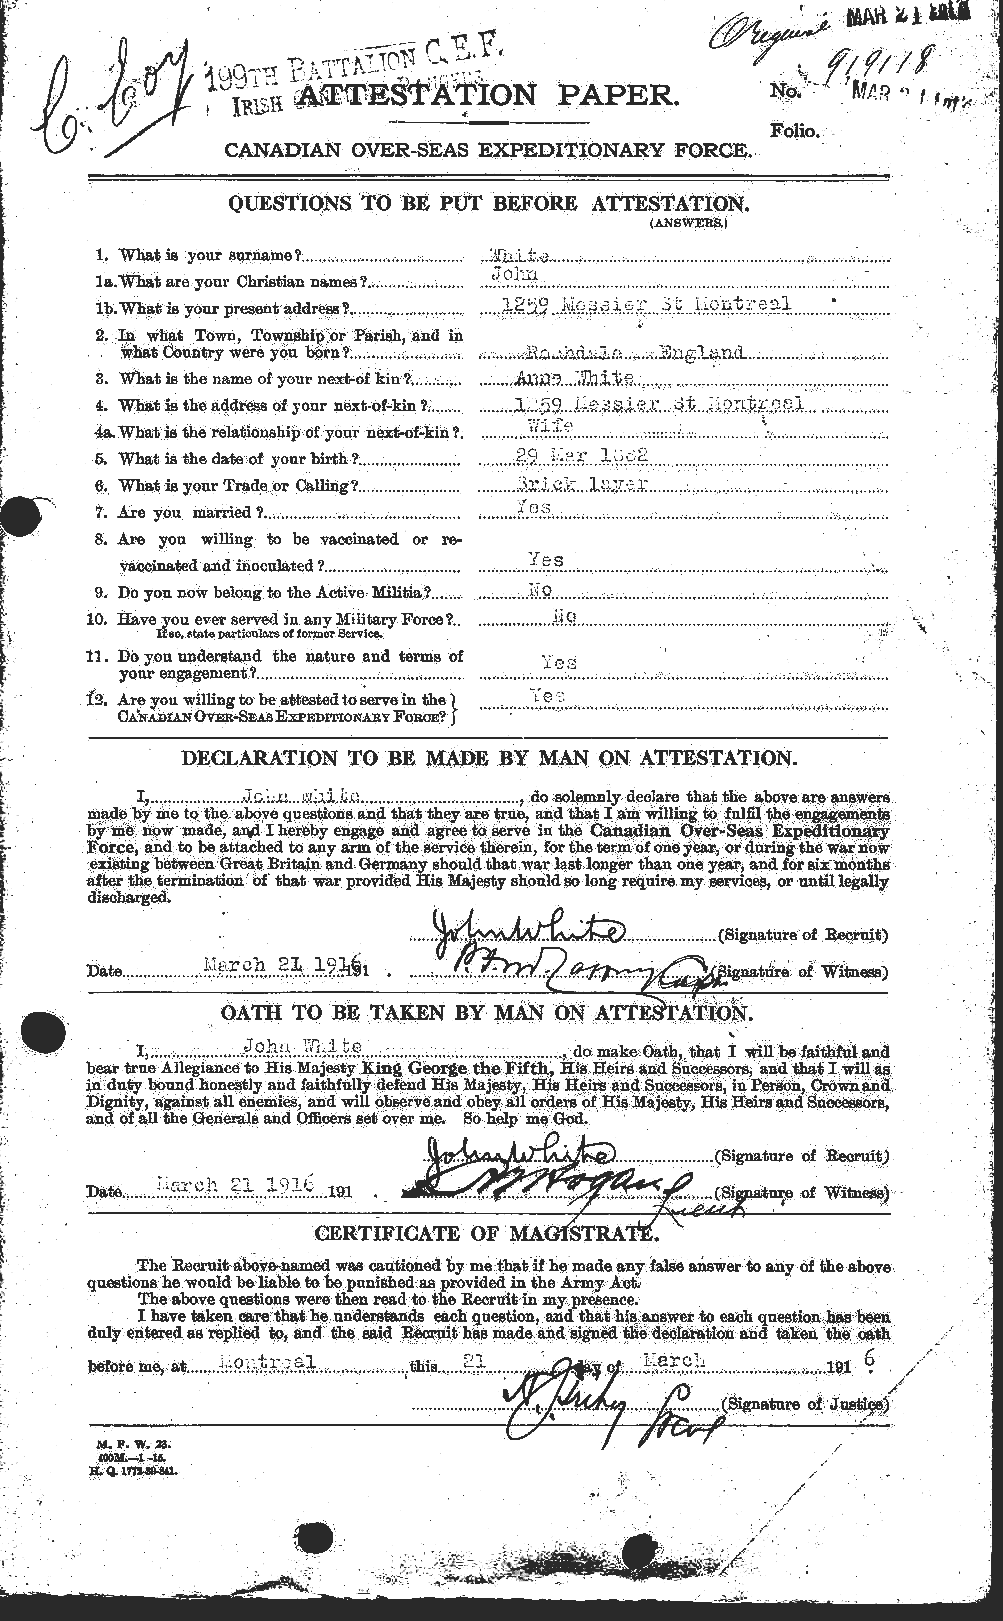 Dossiers du Personnel de la Première Guerre mondiale - CEC 671517a